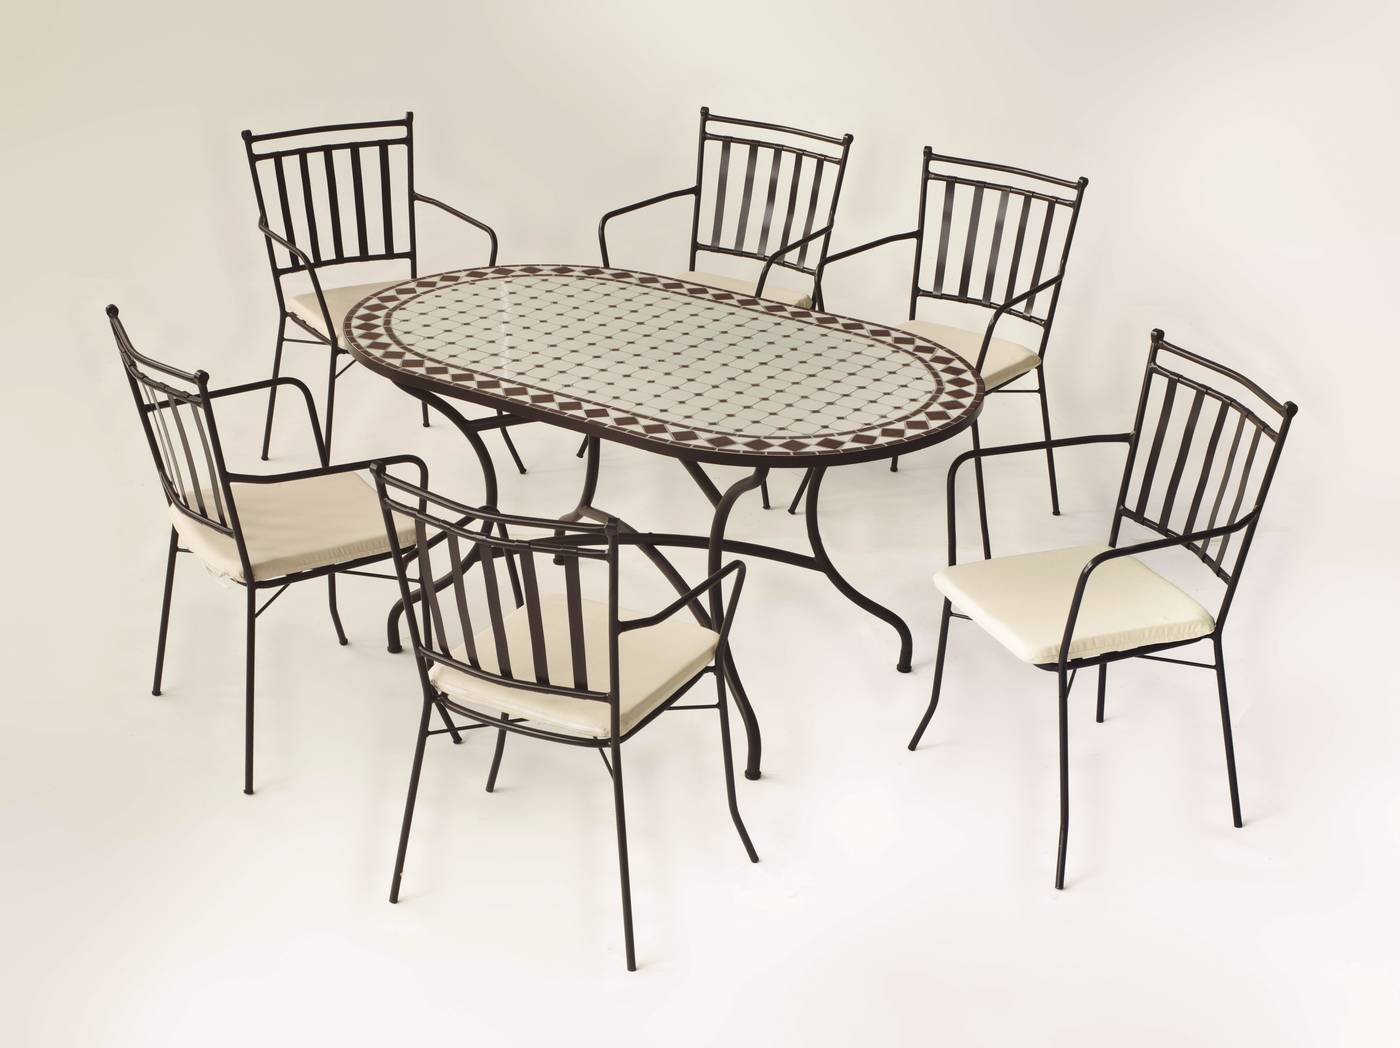 Conjunto Mosaico Sambala-Shifa - Conjunto de forja color bronce: mesa con tablero mosaico de 150 cm + 6 sillones con cojines asiento.